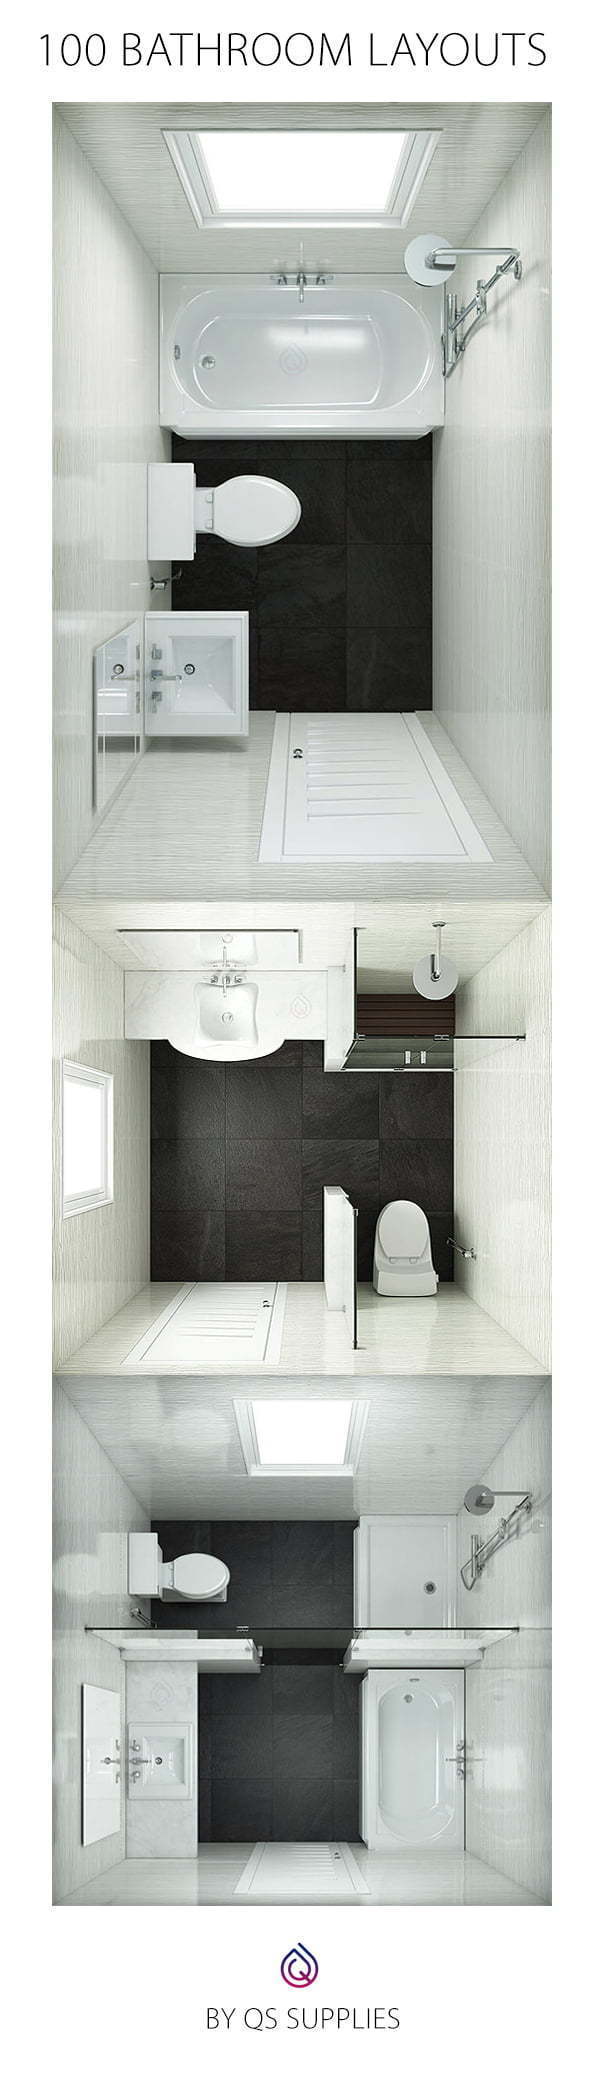 bathroom layouts